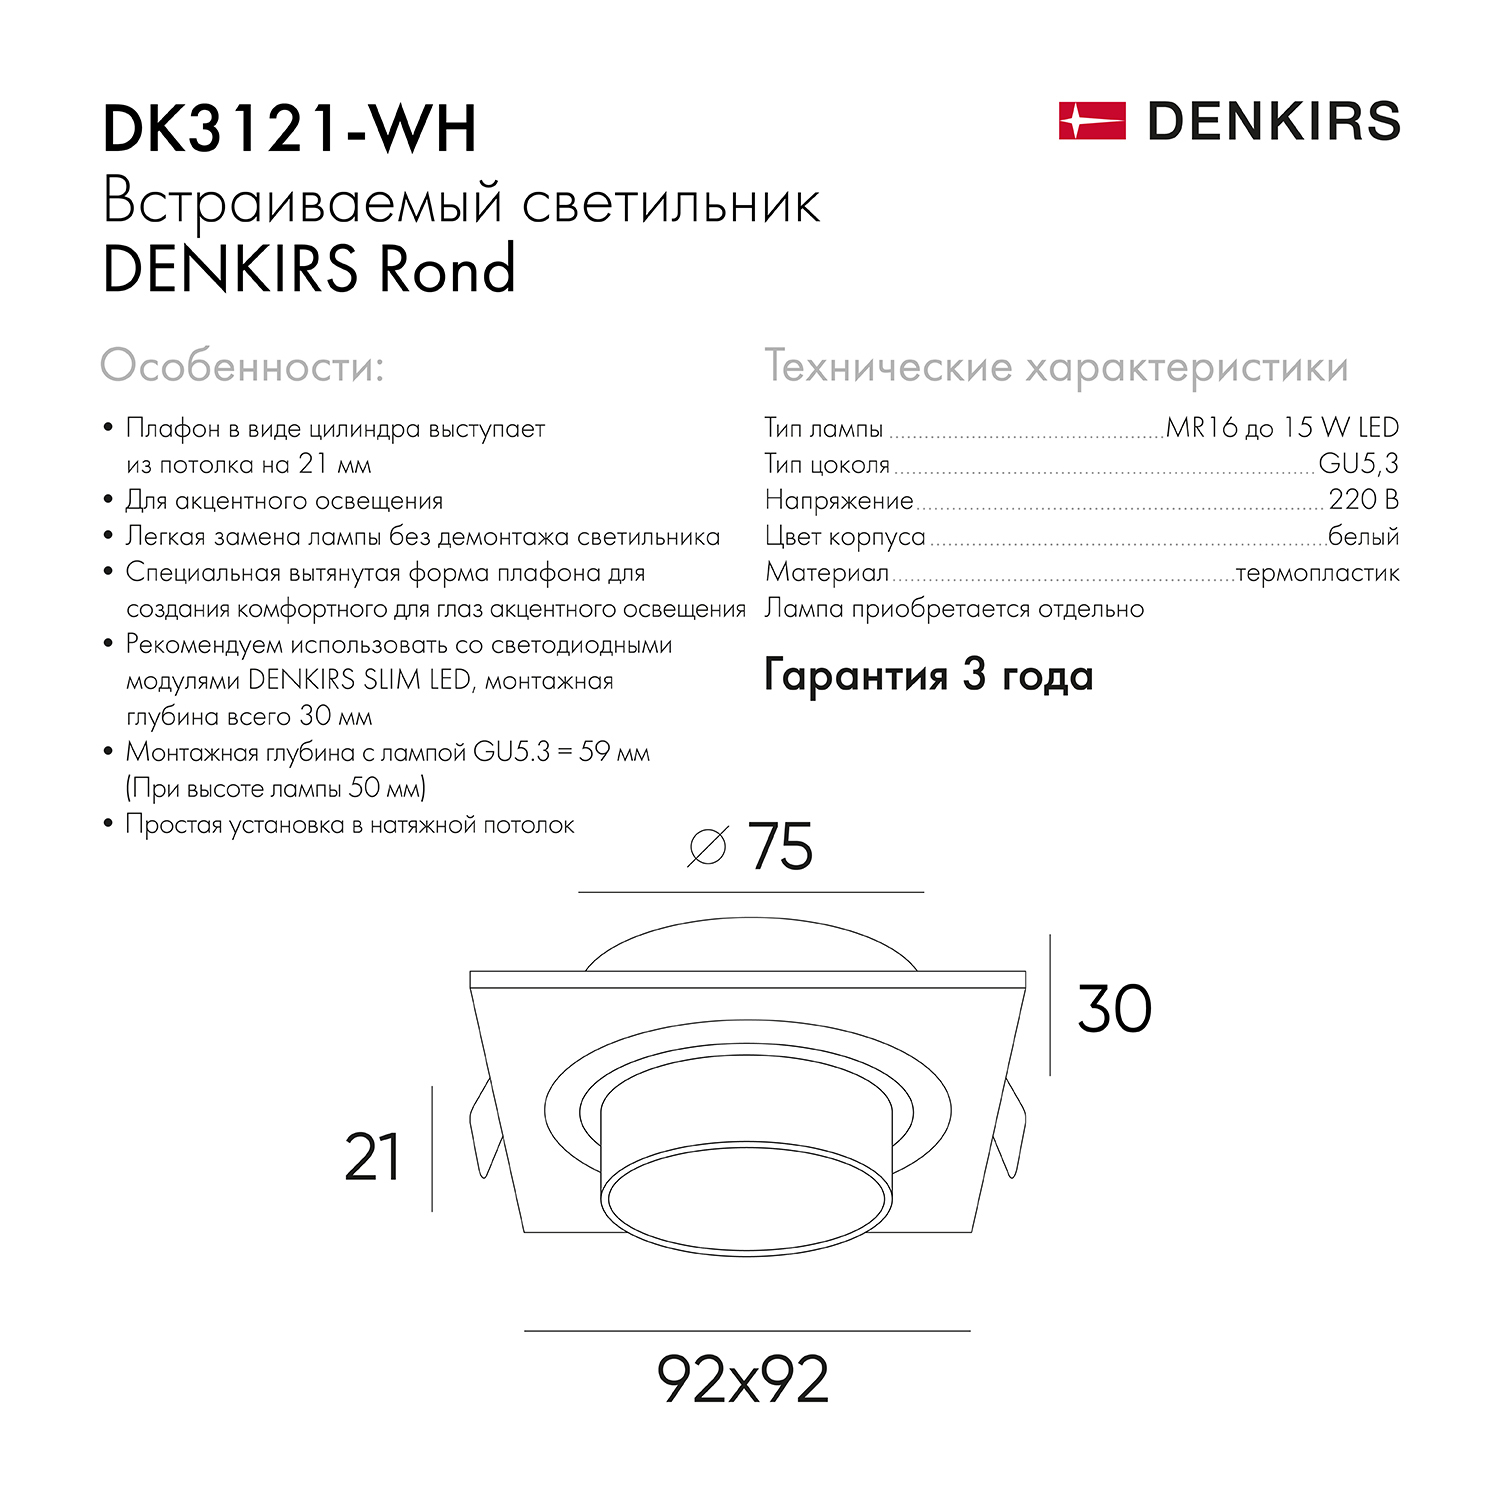 DK3121-WH